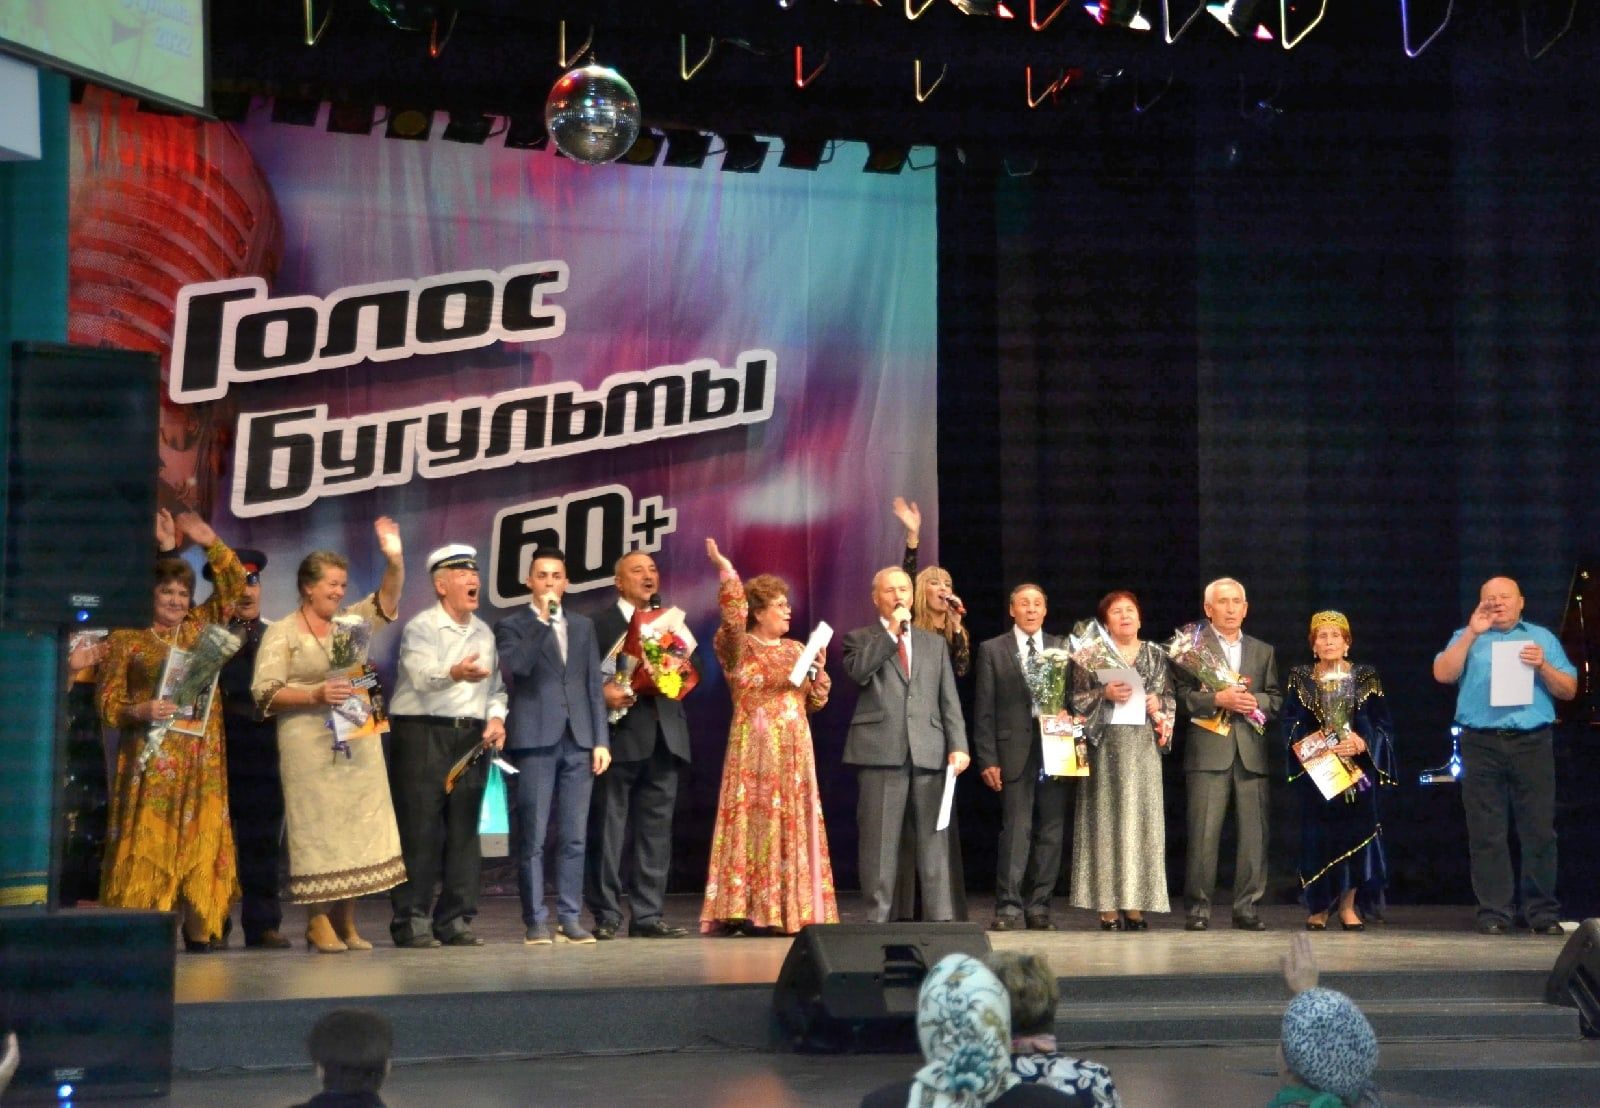 Полковник в отставке победил в конкурсе «Голос Бугульмы 60+»